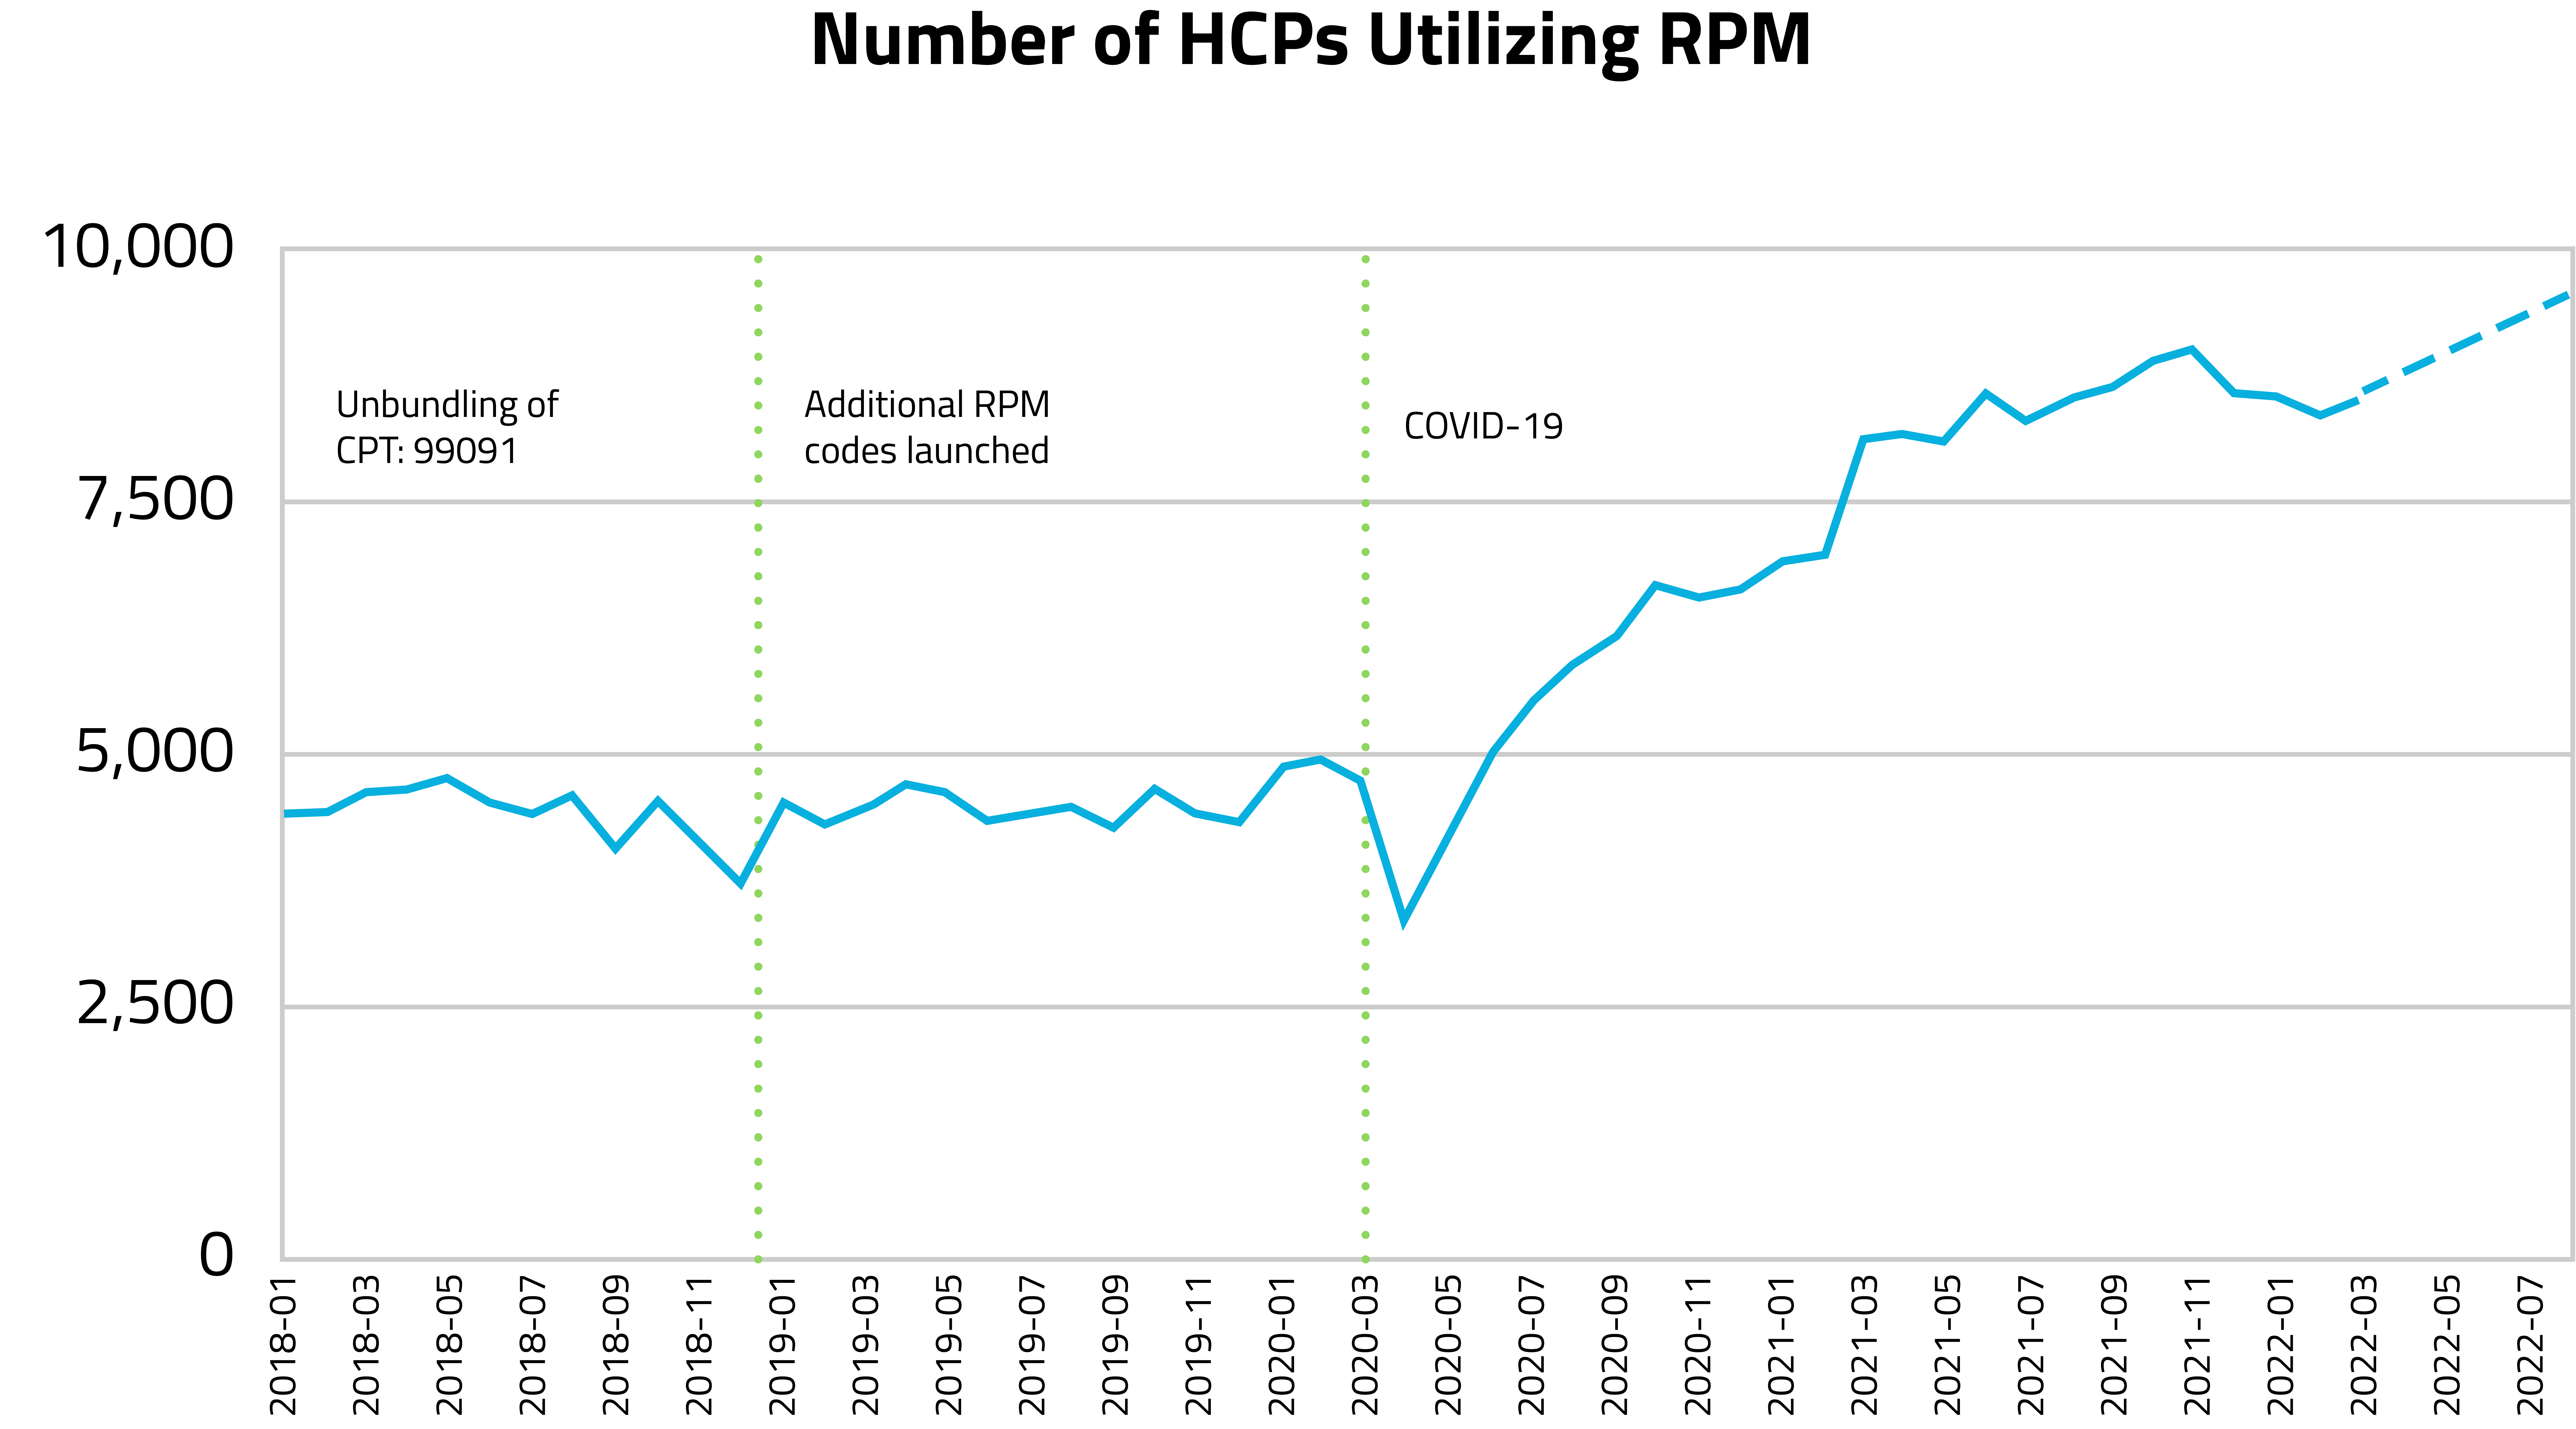 Number of HCPs Utilizing RPM